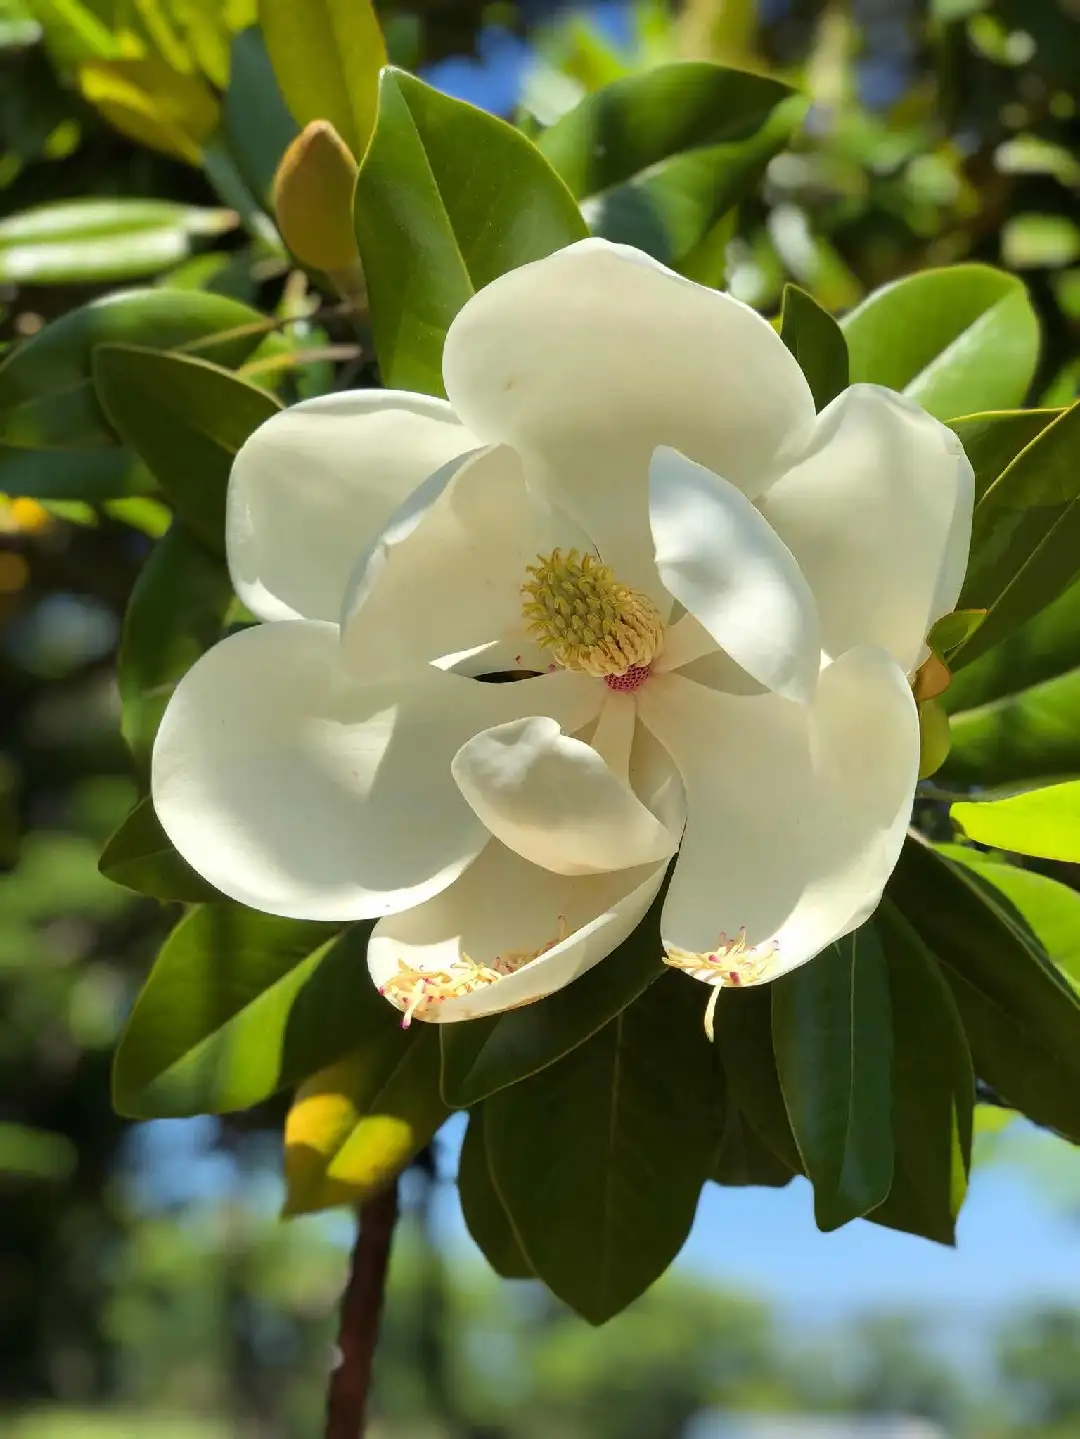 Magnolia - PictureThis